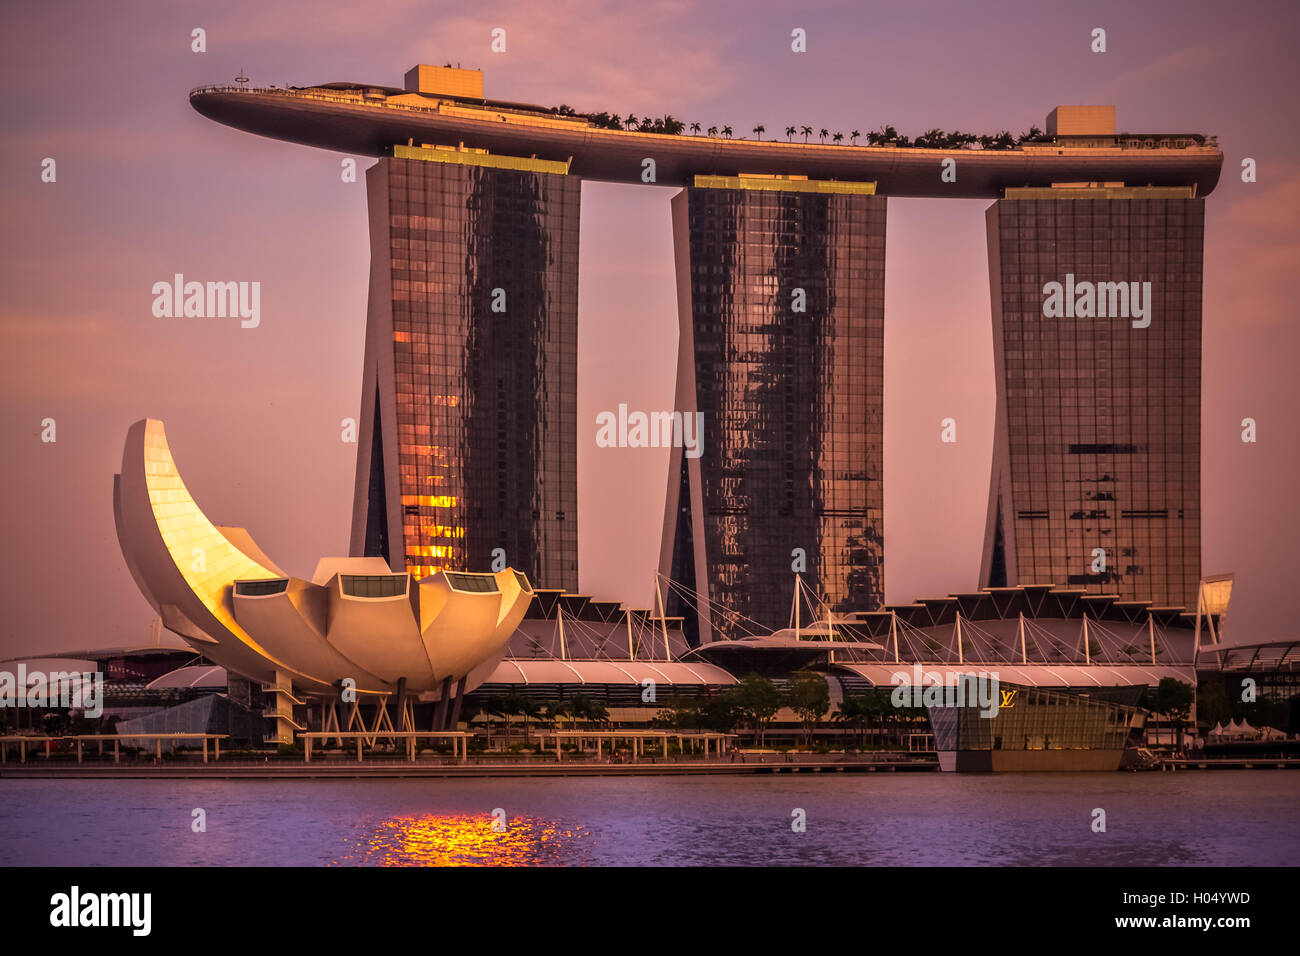 Singapore, Marina Bay sands, tramonto, città dell'Asia, viaggi, hotel, la piscina sul tetto, Golden Shadow Foto Stock